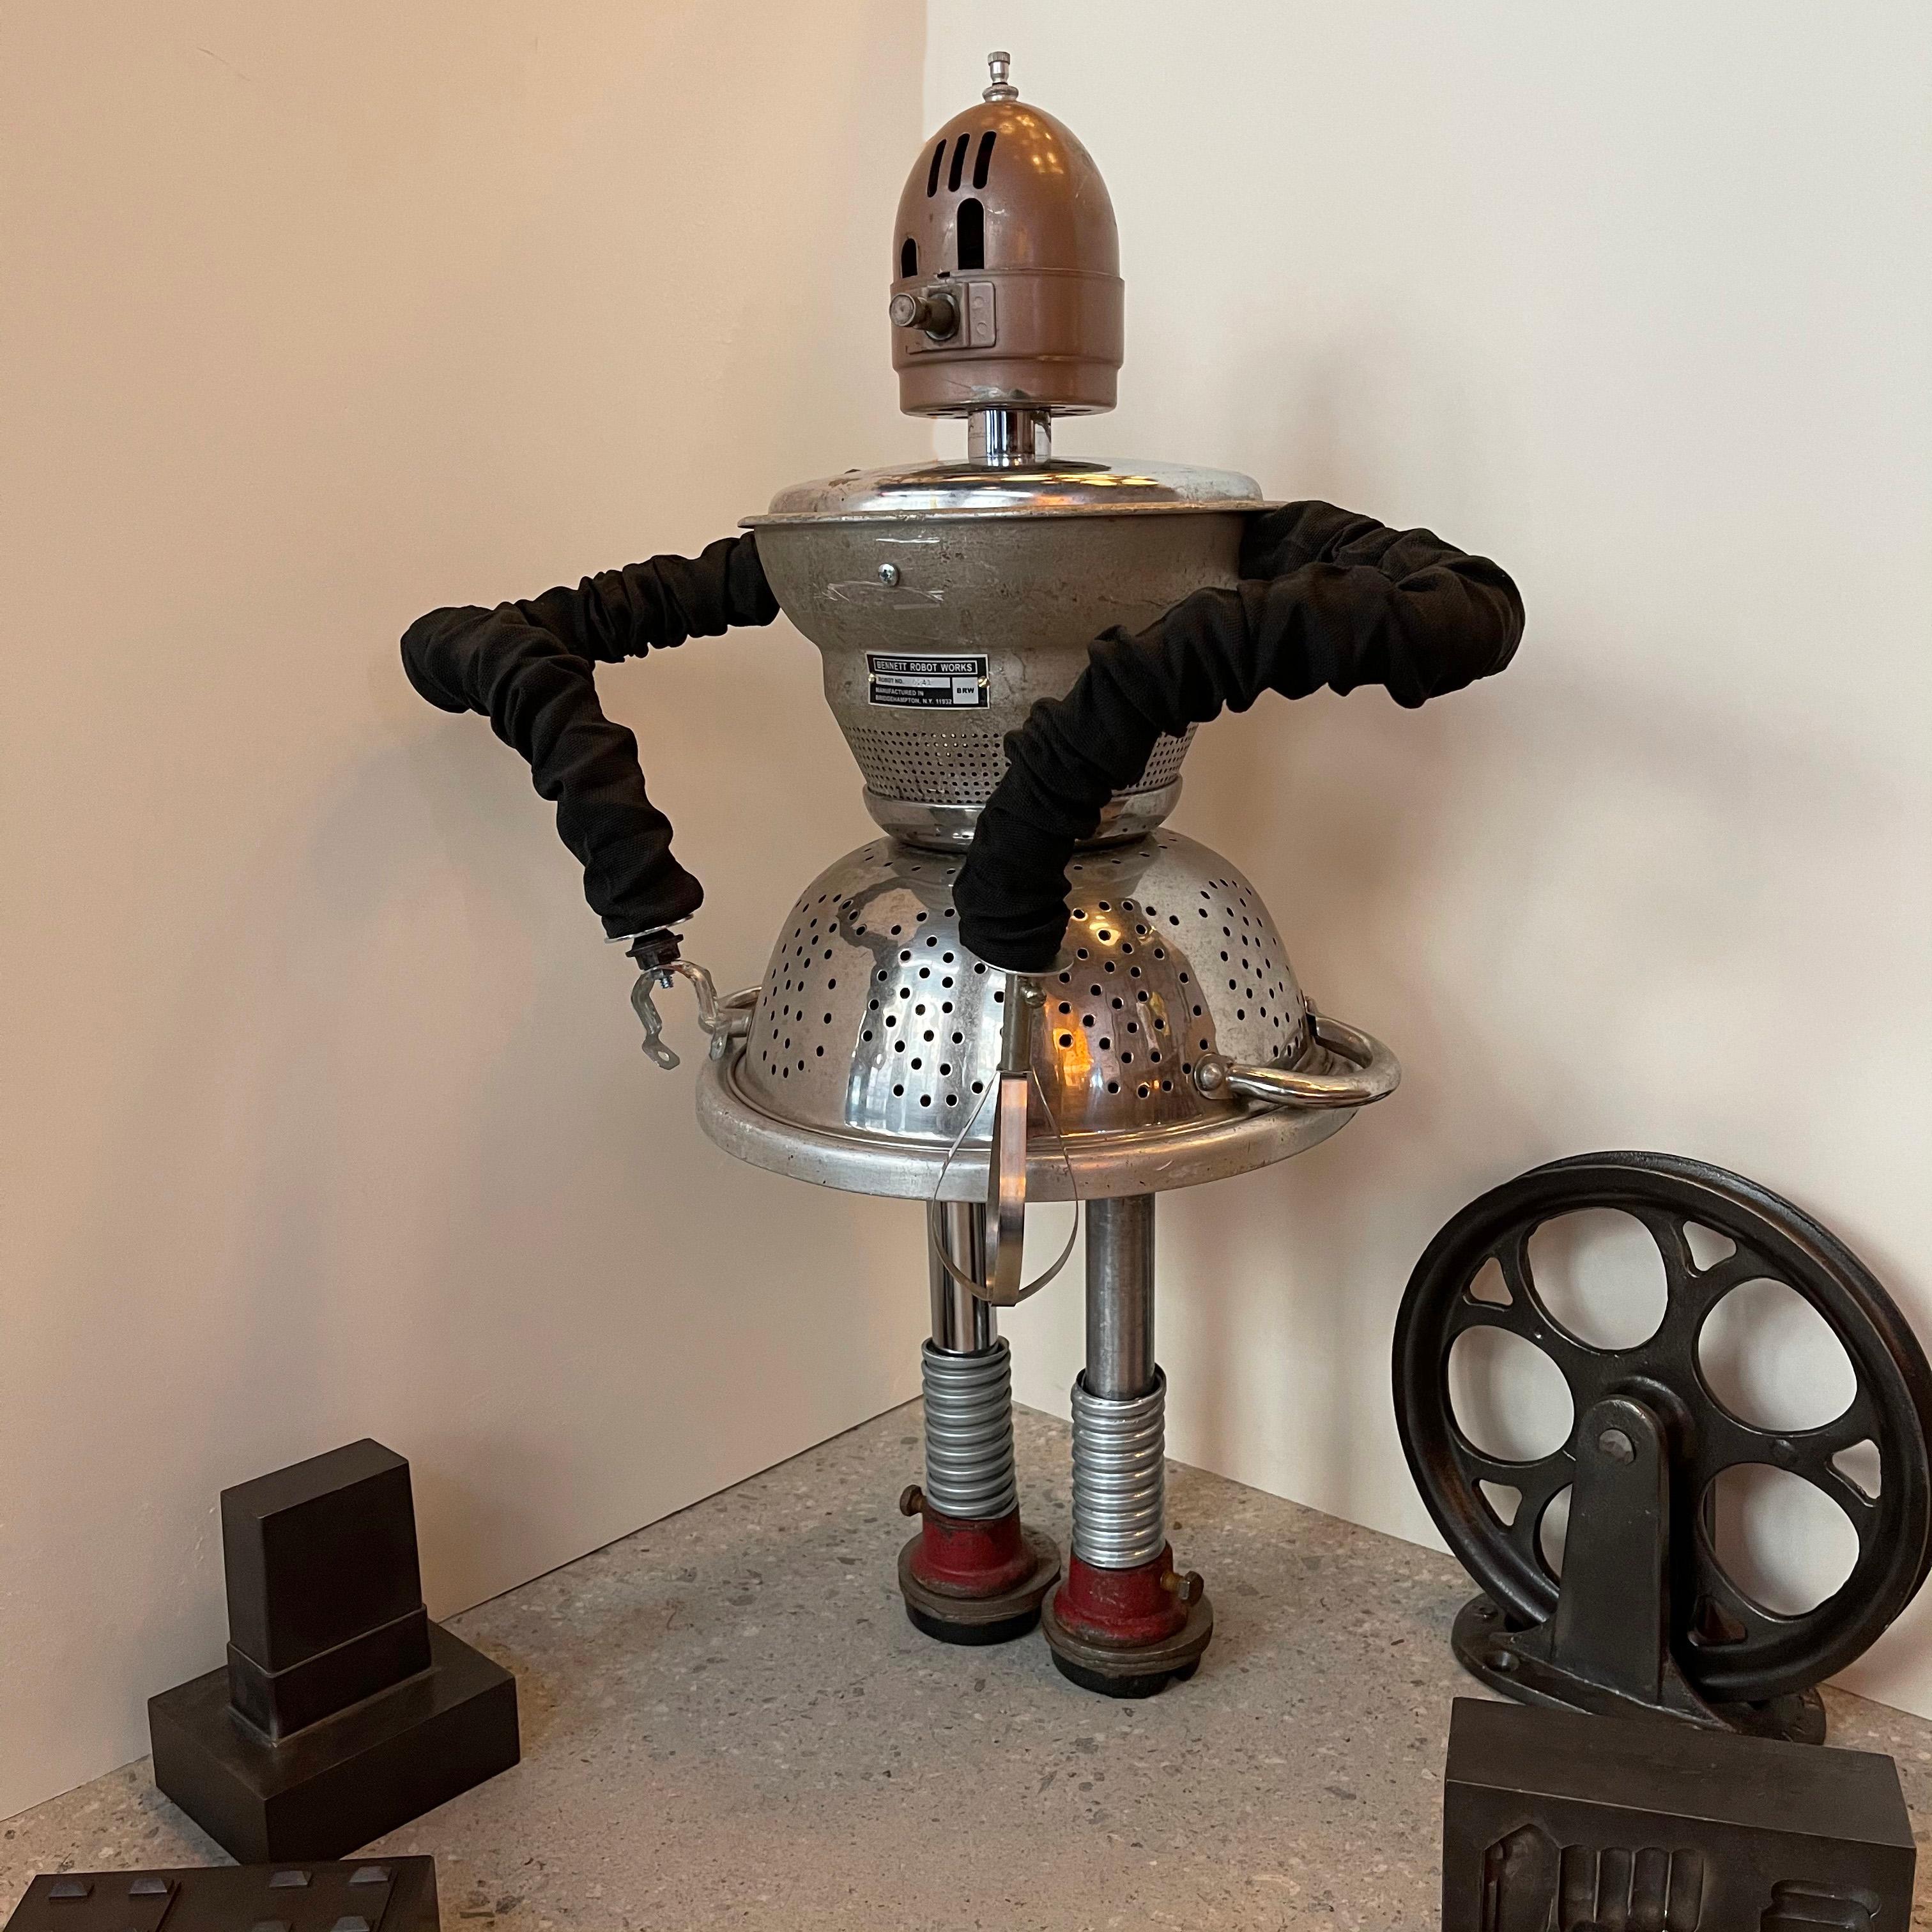 Machine Age Chef Robot Sculpture by Bennett Robot Works